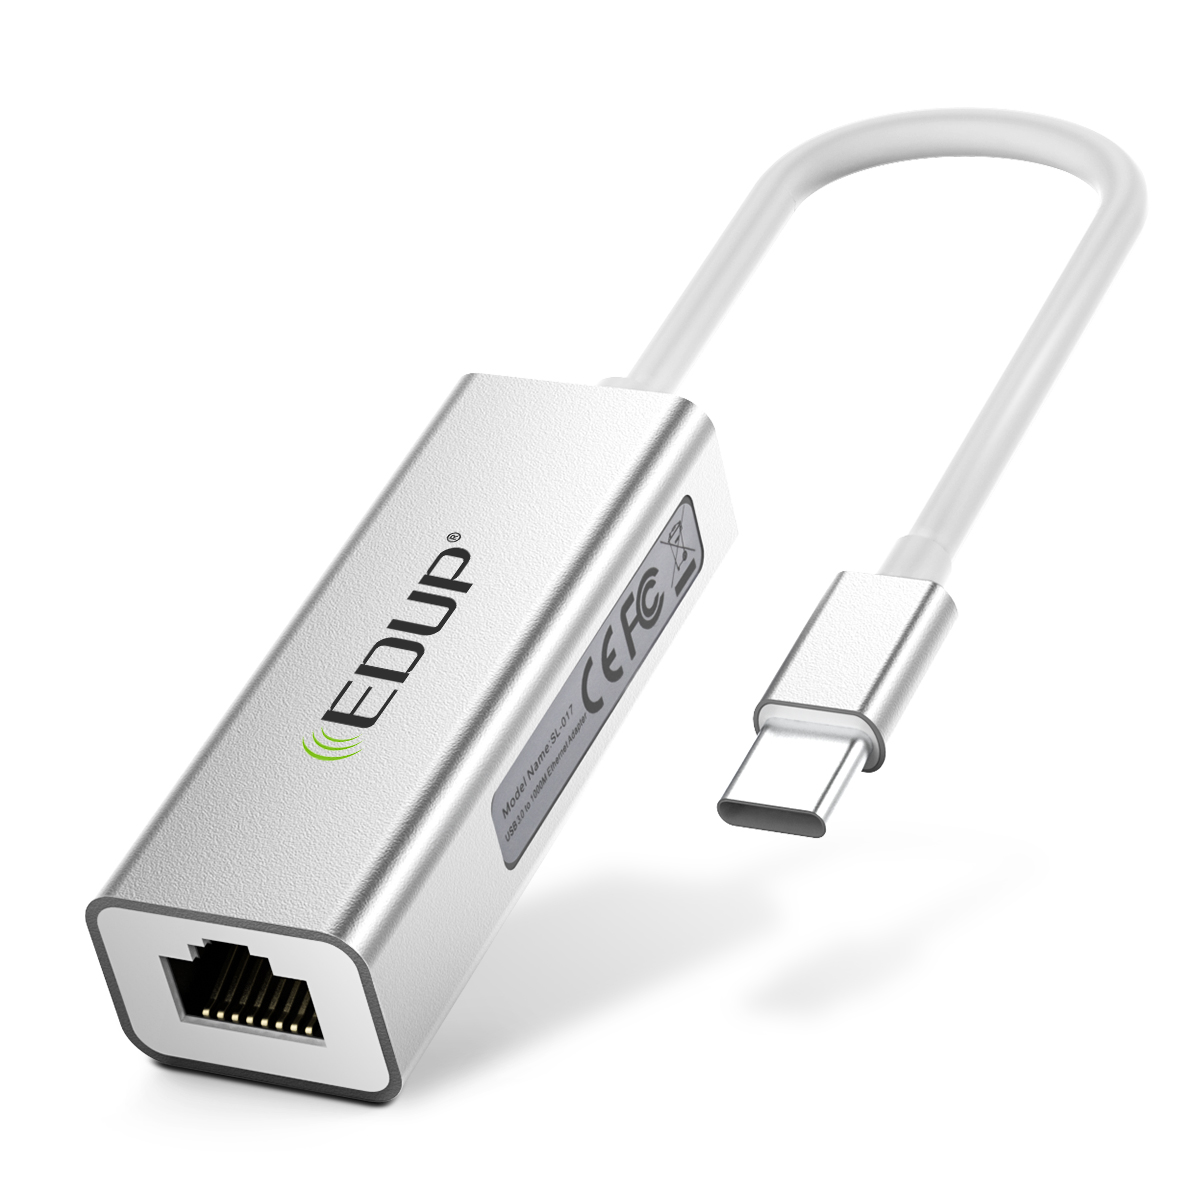 EDUP 10/100/1000Mbps USB 3.0 Gigabit Ethernet USB-C Adapter EP 